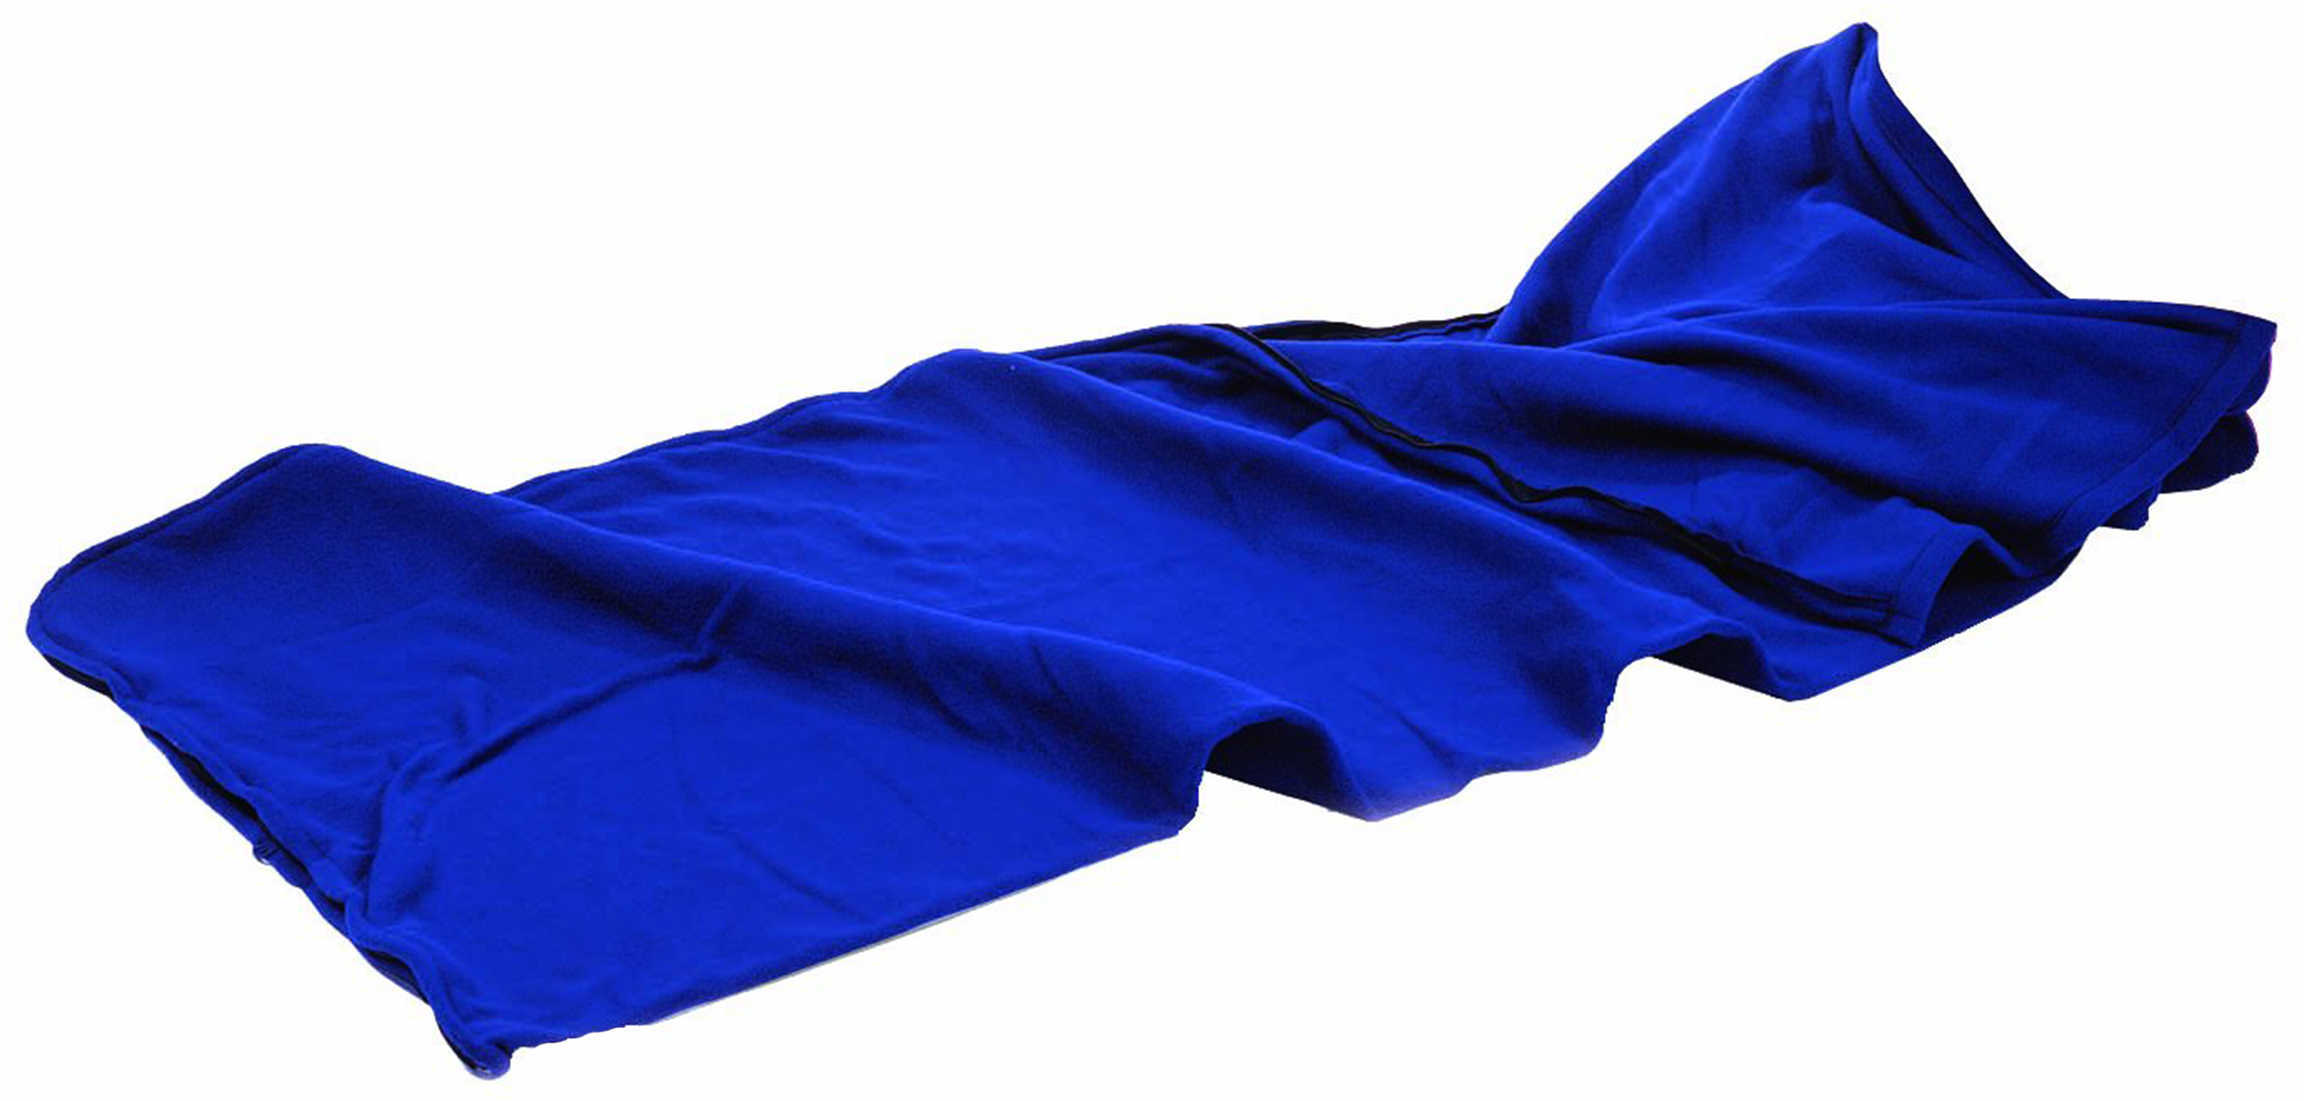 Tex Sport Fleece Sleeping Bag Blue Md: 15202